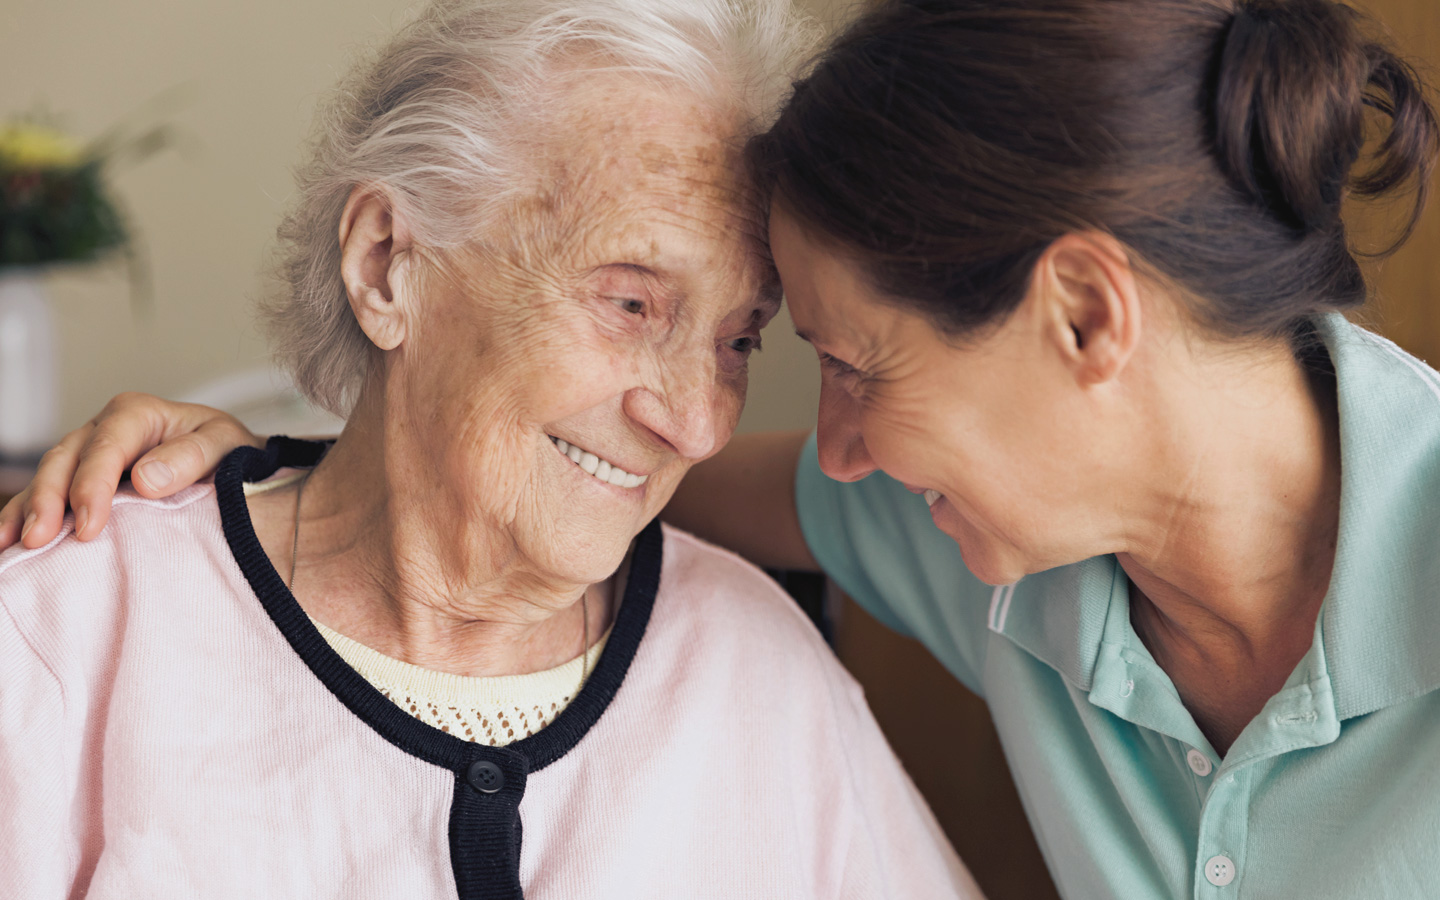 Foto: Eine pflegende Frau umarmt eine ältere Frau und lächelt.